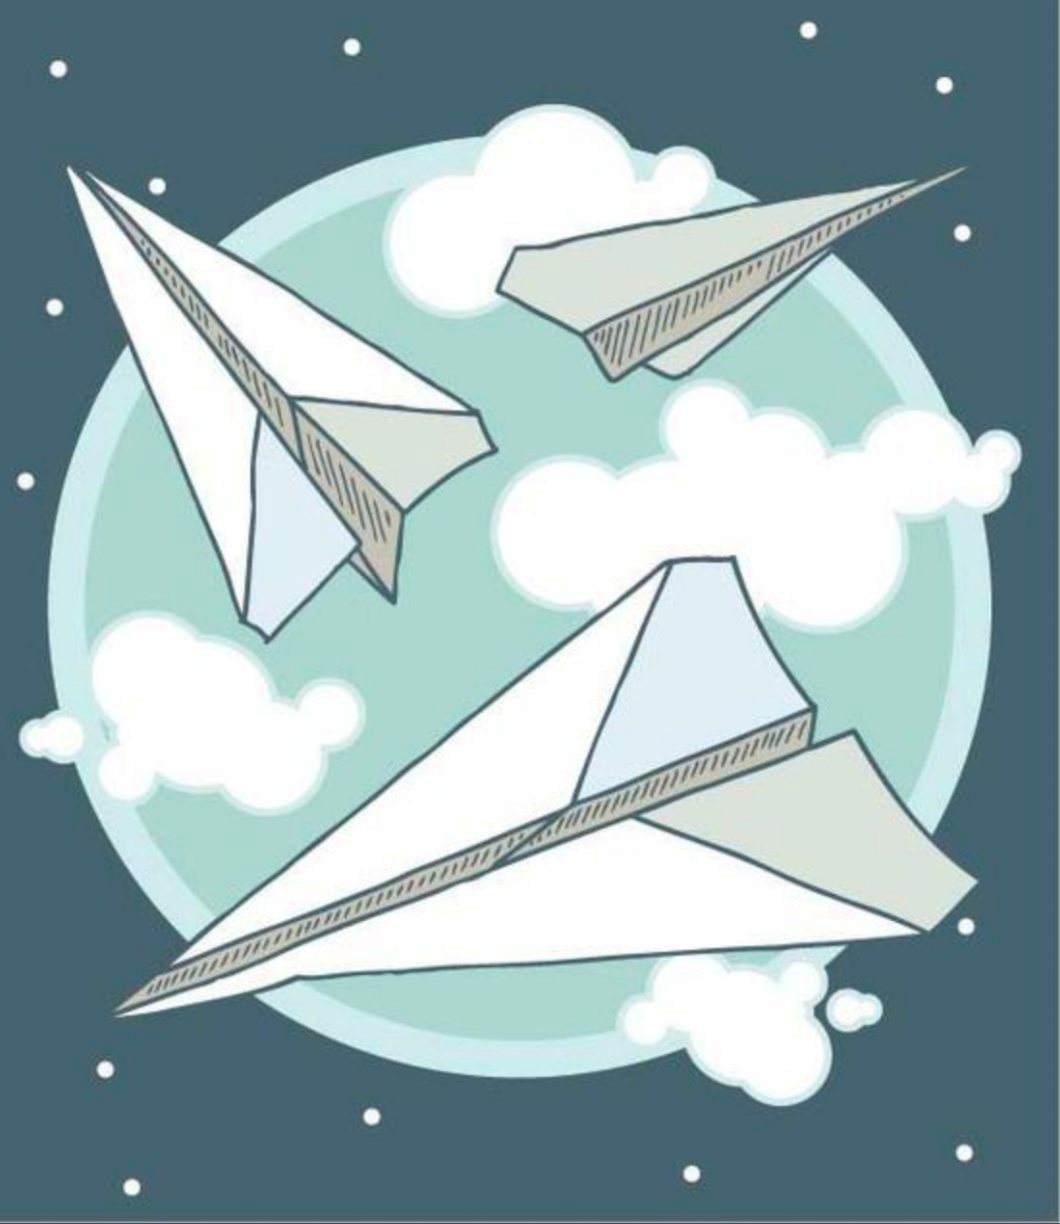 [纸飞机尝试次数过多]纸飞机尝试次数过多怎么办